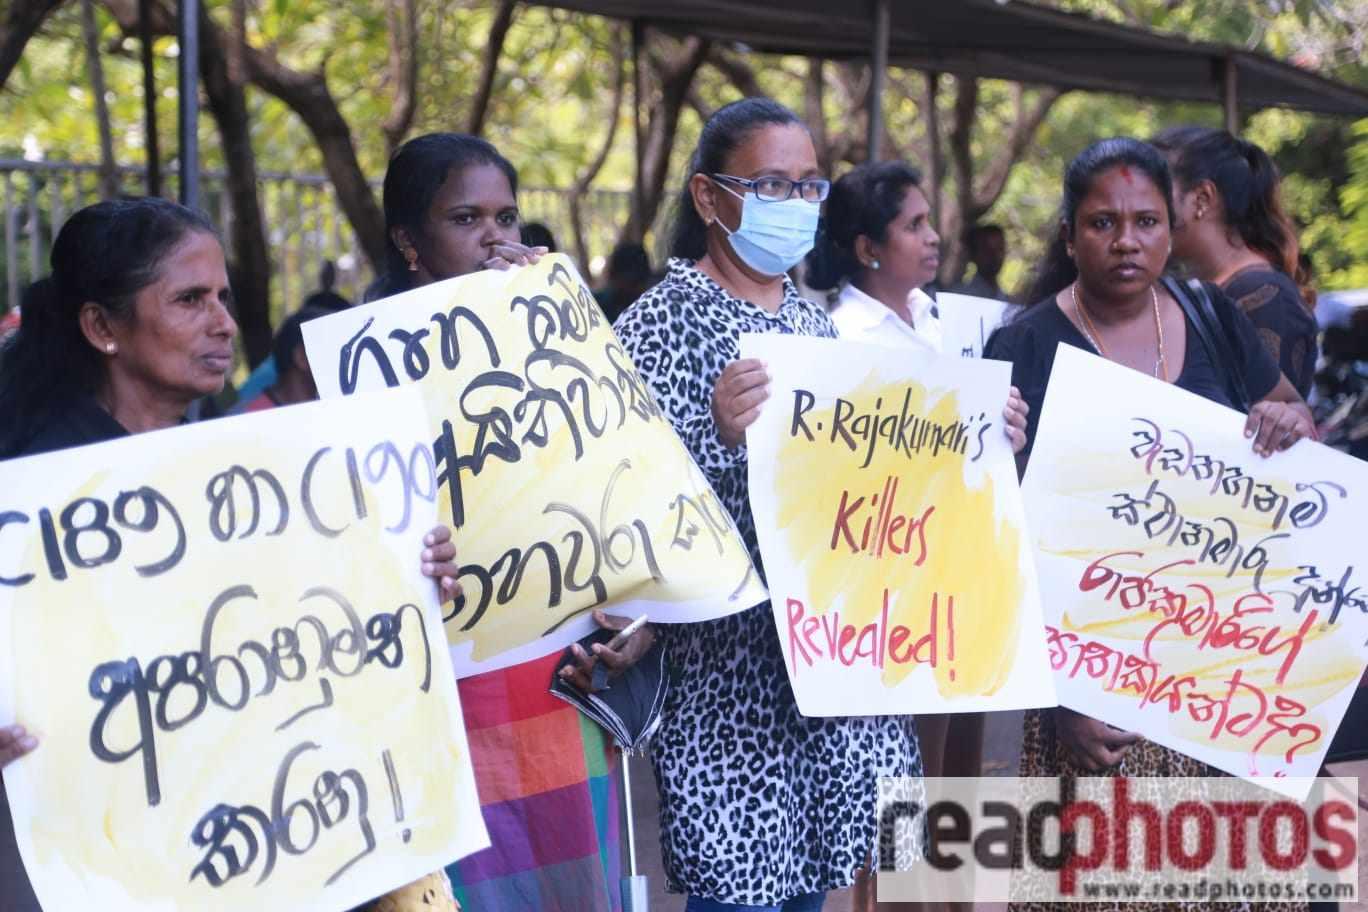 Justice for R Rajakumari - Read Photos